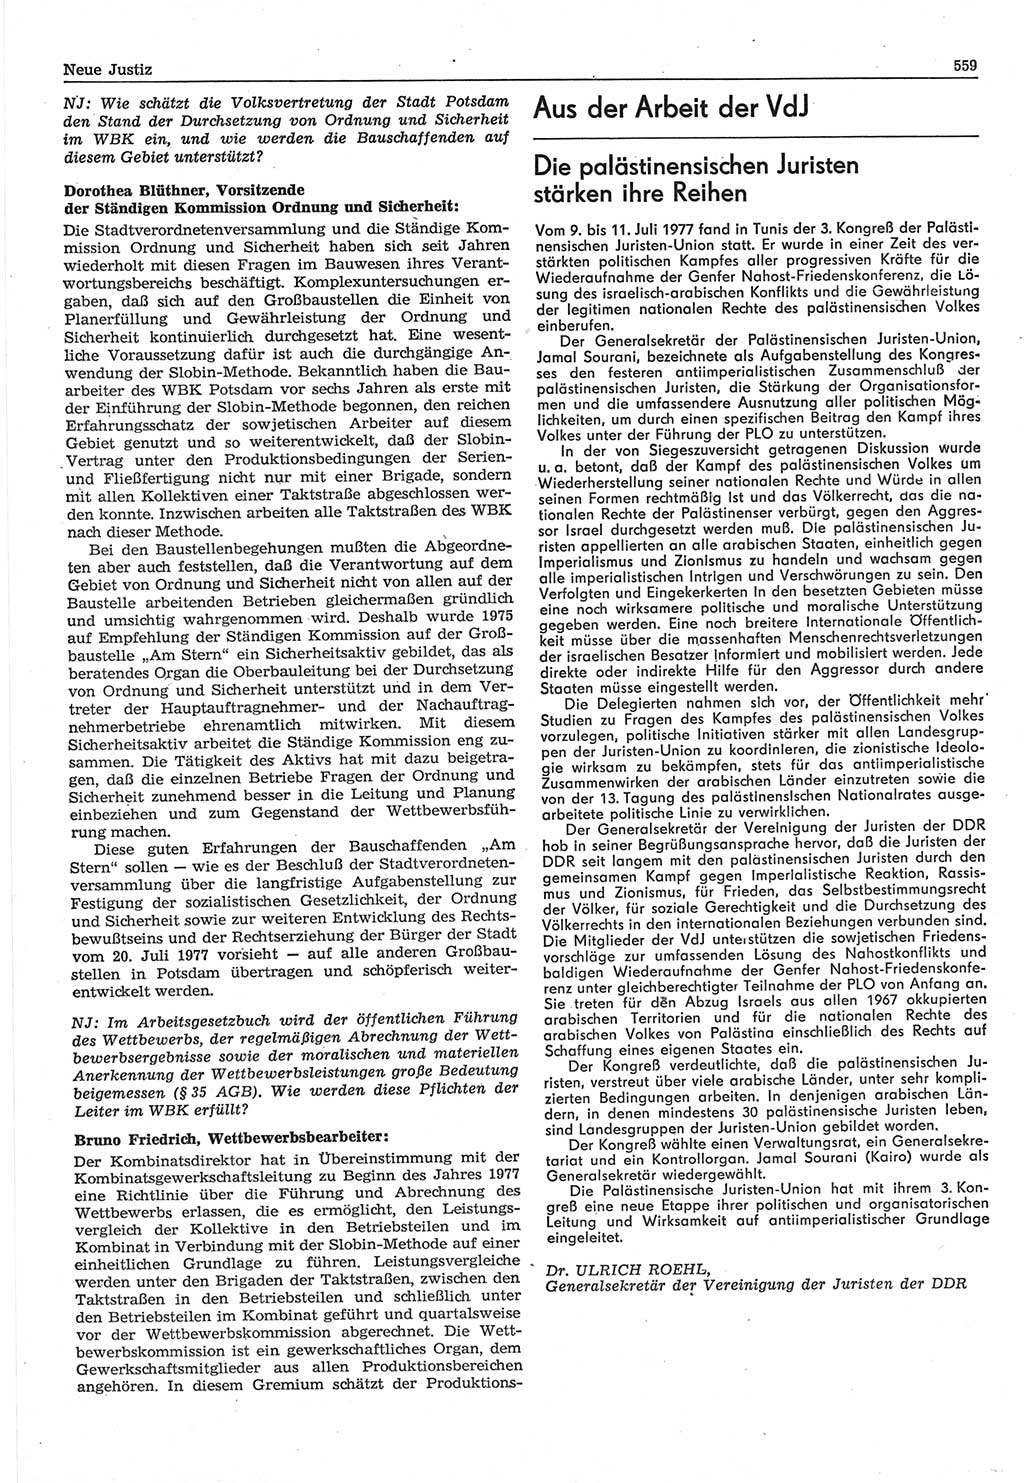 Neue Justiz (NJ), Zeitschrift für Recht und Rechtswissenschaft-Zeitschrift, sozialistisches Recht und Gesetzlichkeit, 31. Jahrgang 1977, Seite 559 (NJ DDR 1977, S. 559)